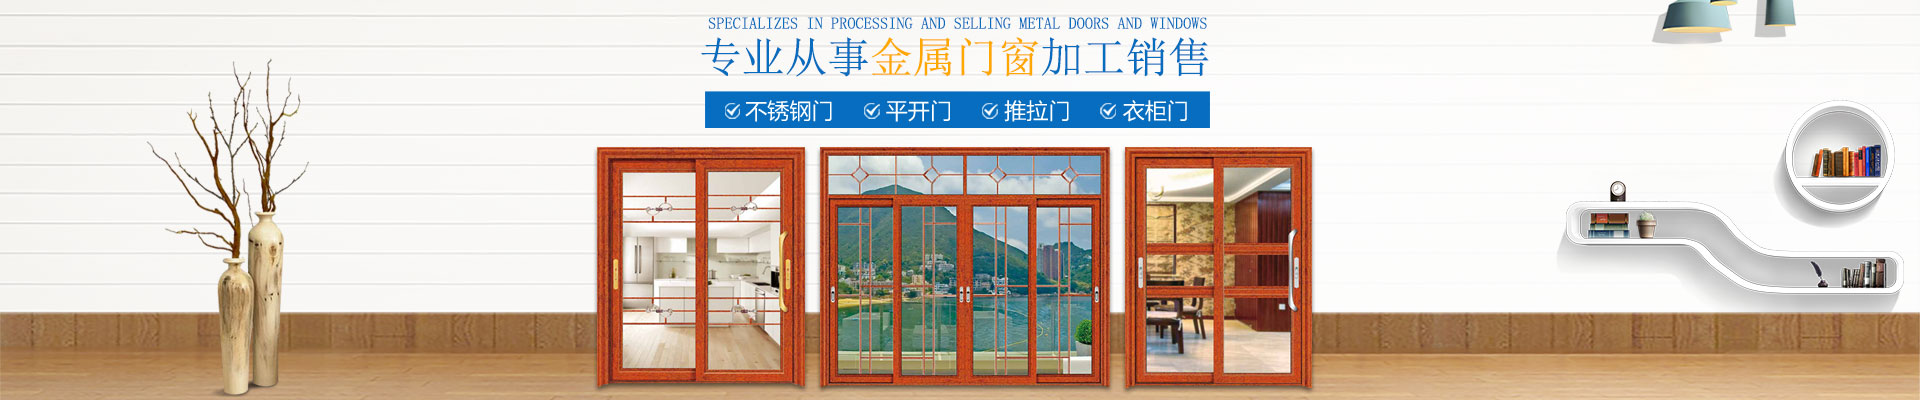 林炫门窗_门窗生产厂家|门窗研发设计|推拉门|不锈钢门